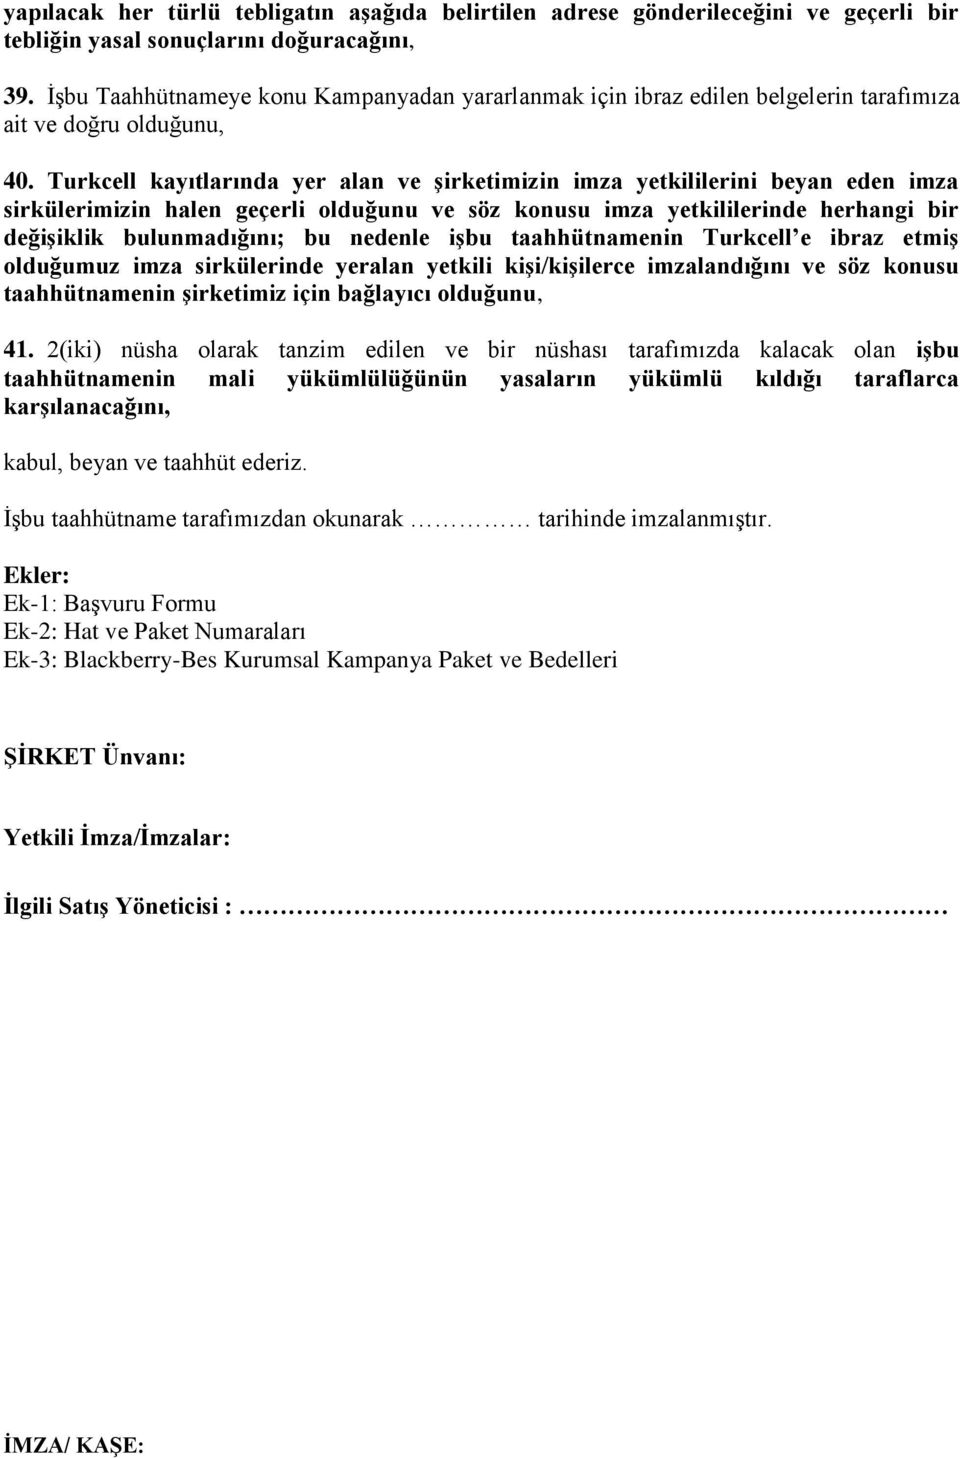 Turkcell kayıtlarında yer alan ve şirketimizin imza yetkililerini beyan eden imza sirkülerimizin halen geçerli olduğunu ve söz konusu imza yetkililerinde herhangi bir değişiklik bulunmadığını; bu